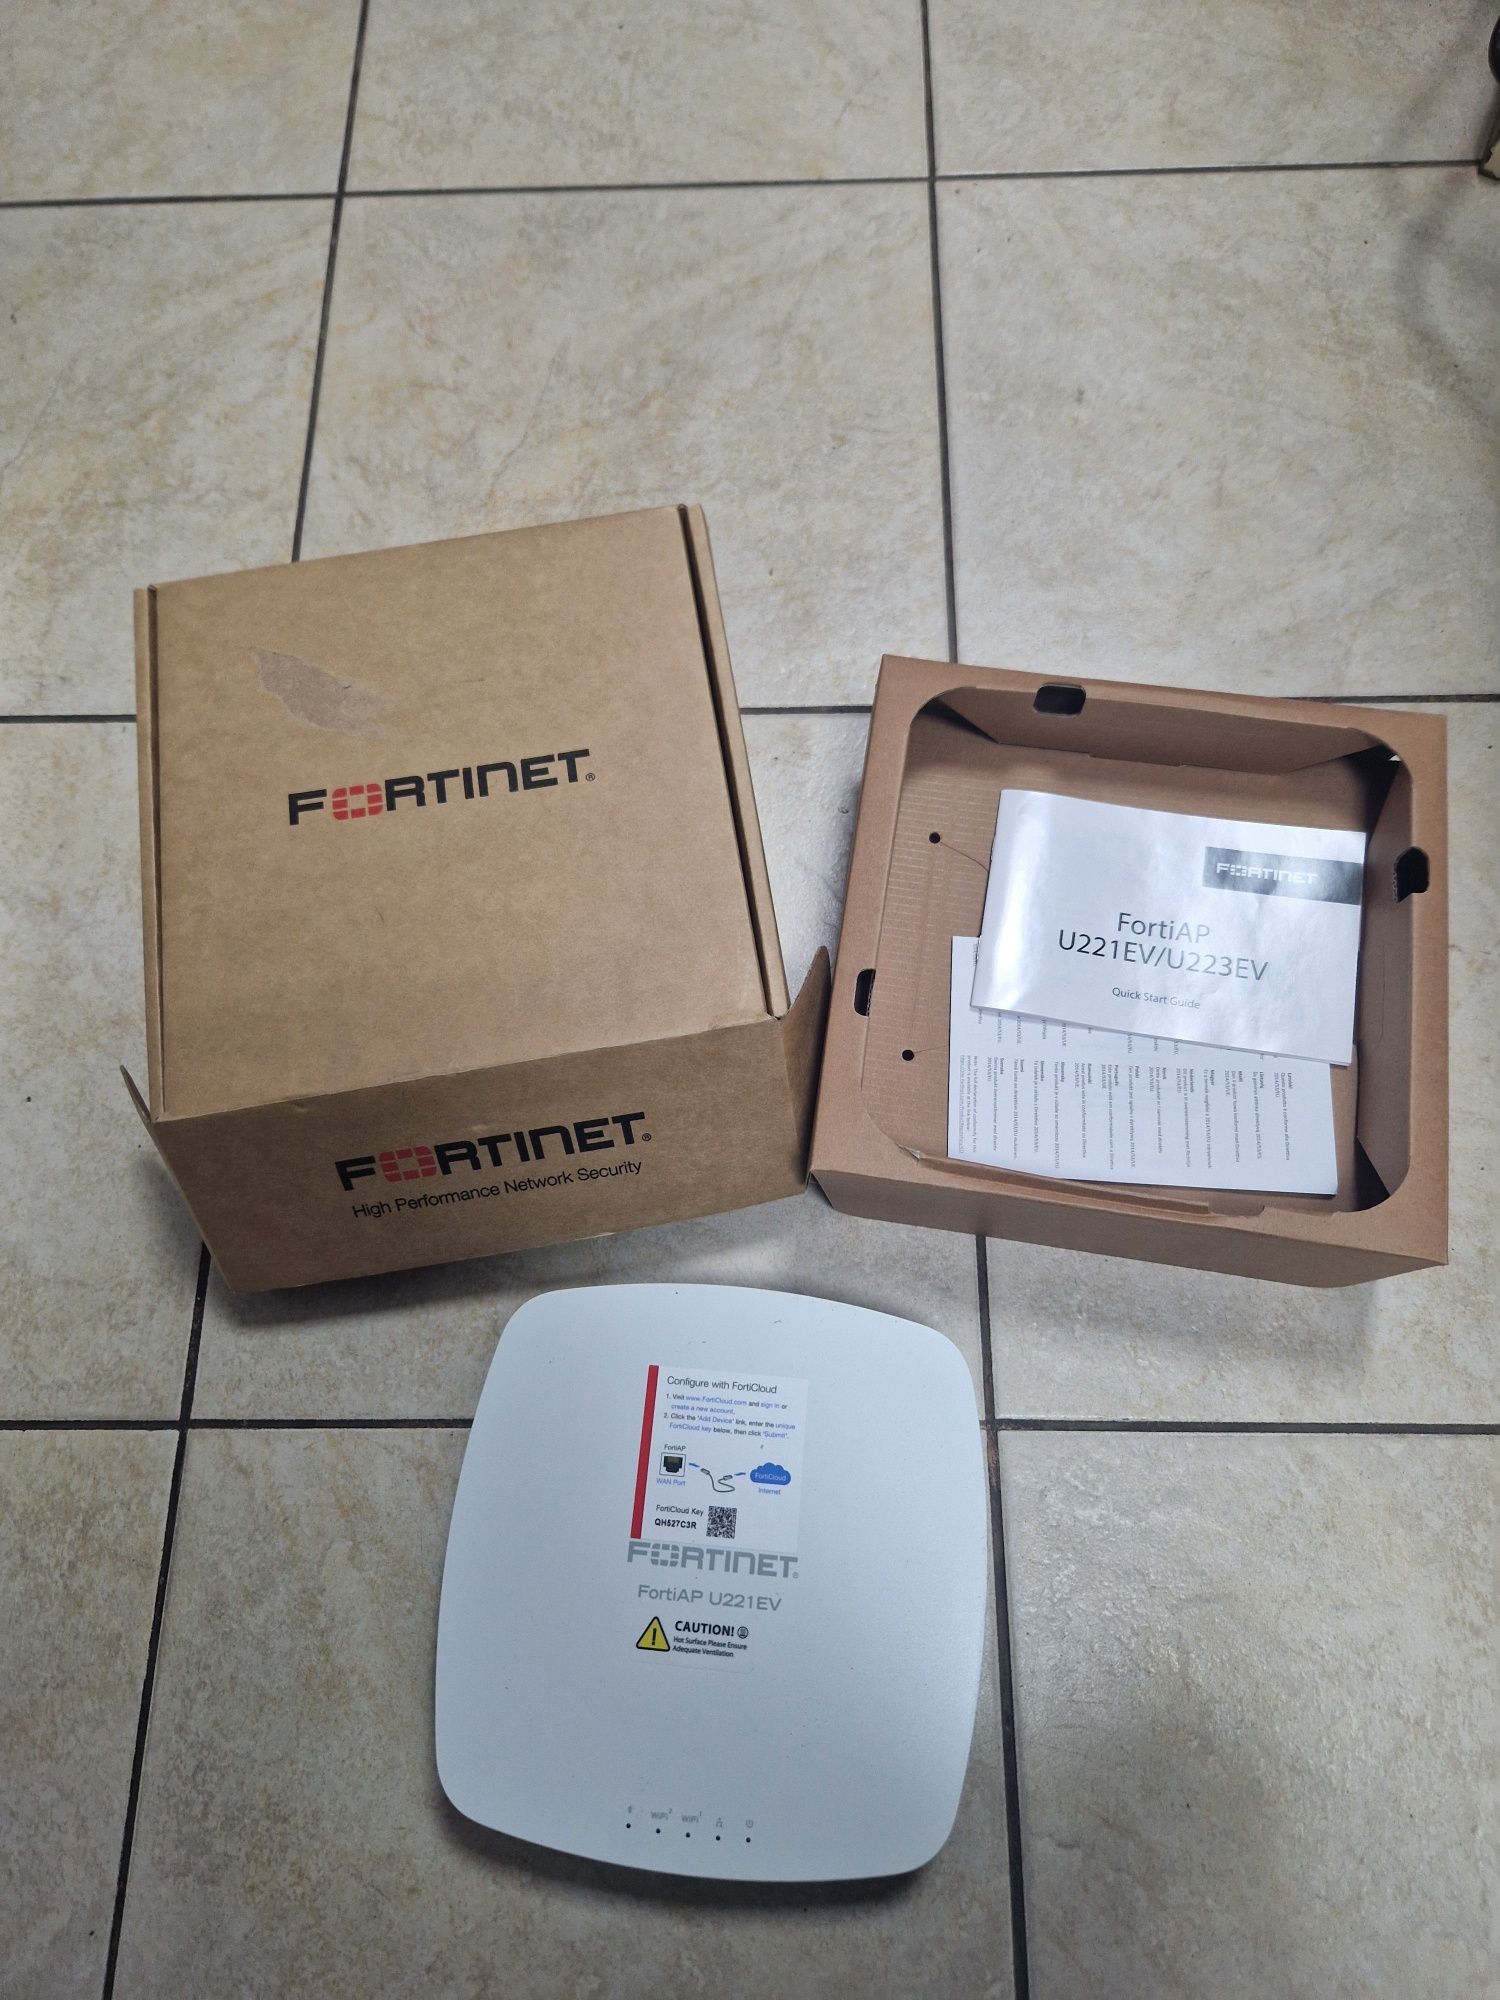 Wi-Fi FortiNet FortiAP FAP-U221EV